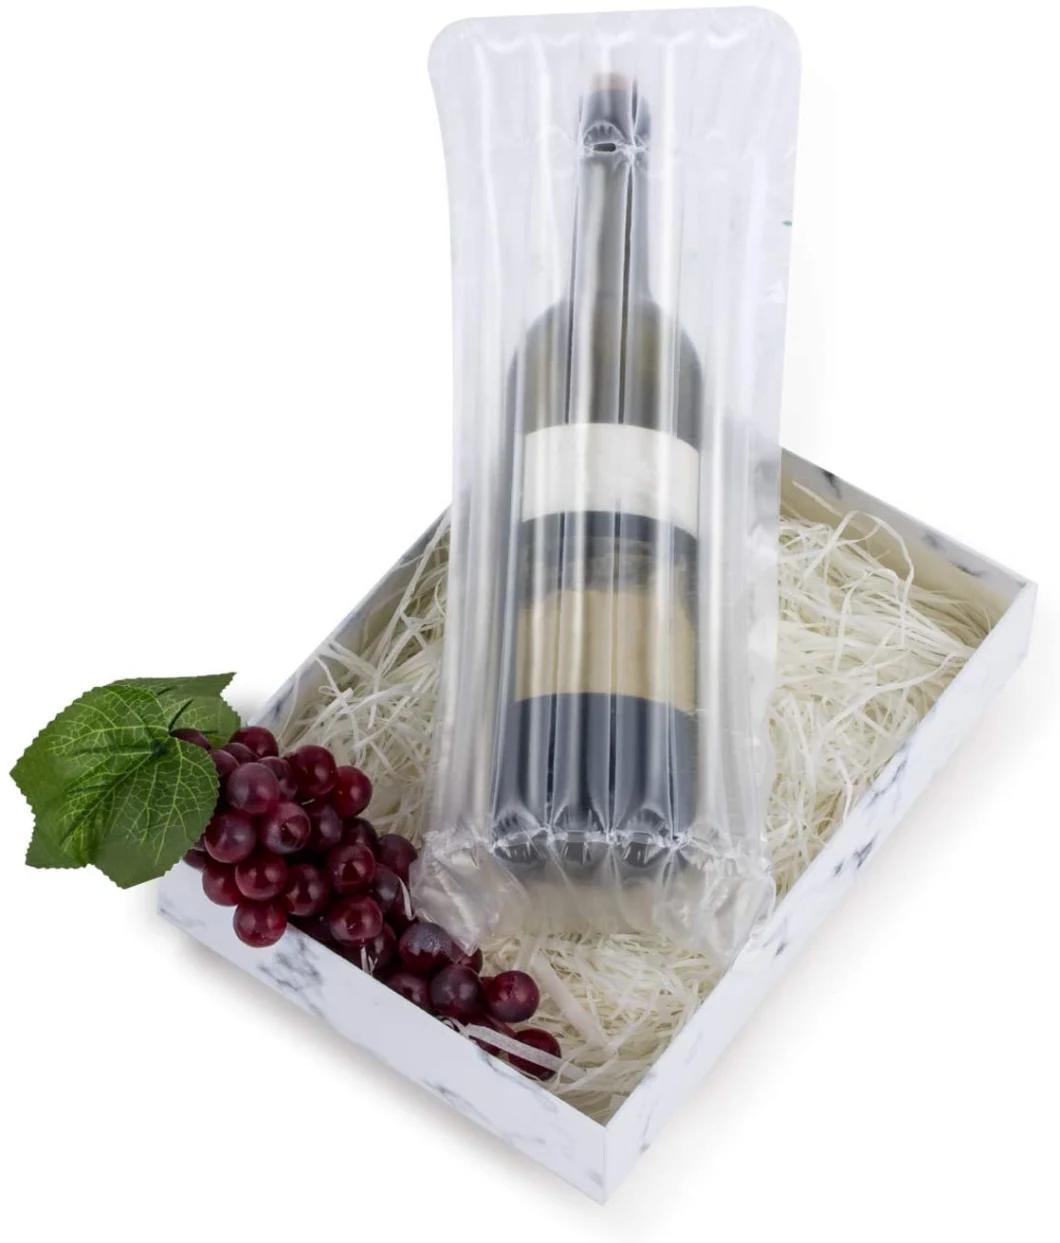 Made in China Waterproof Wine Bottle Air Column Bag Packaging